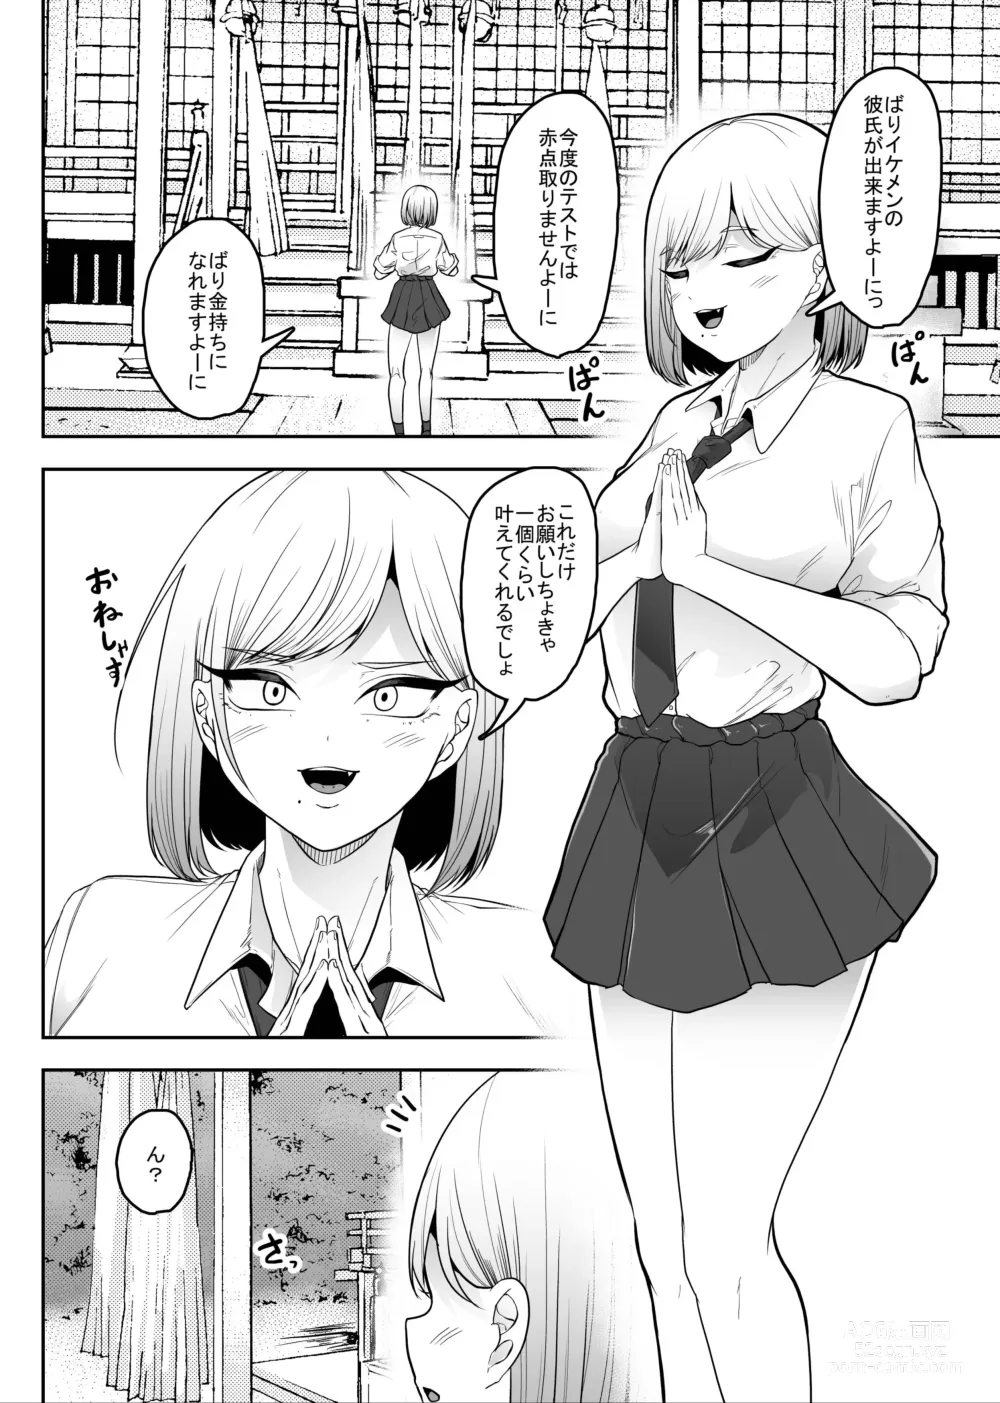 Page 3 of doujinshi Chuuwai